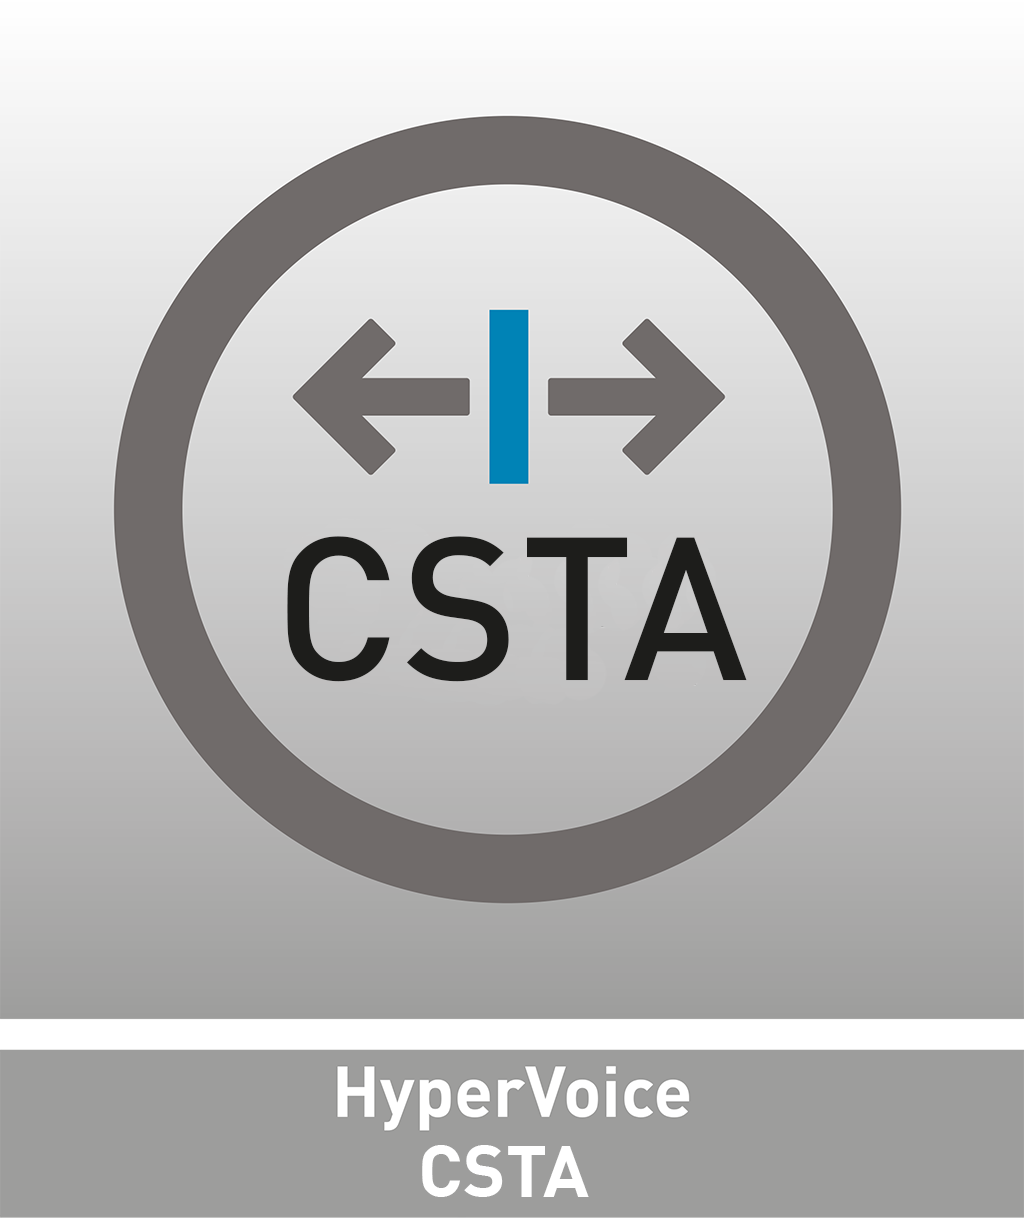 HyperVoice CSTA